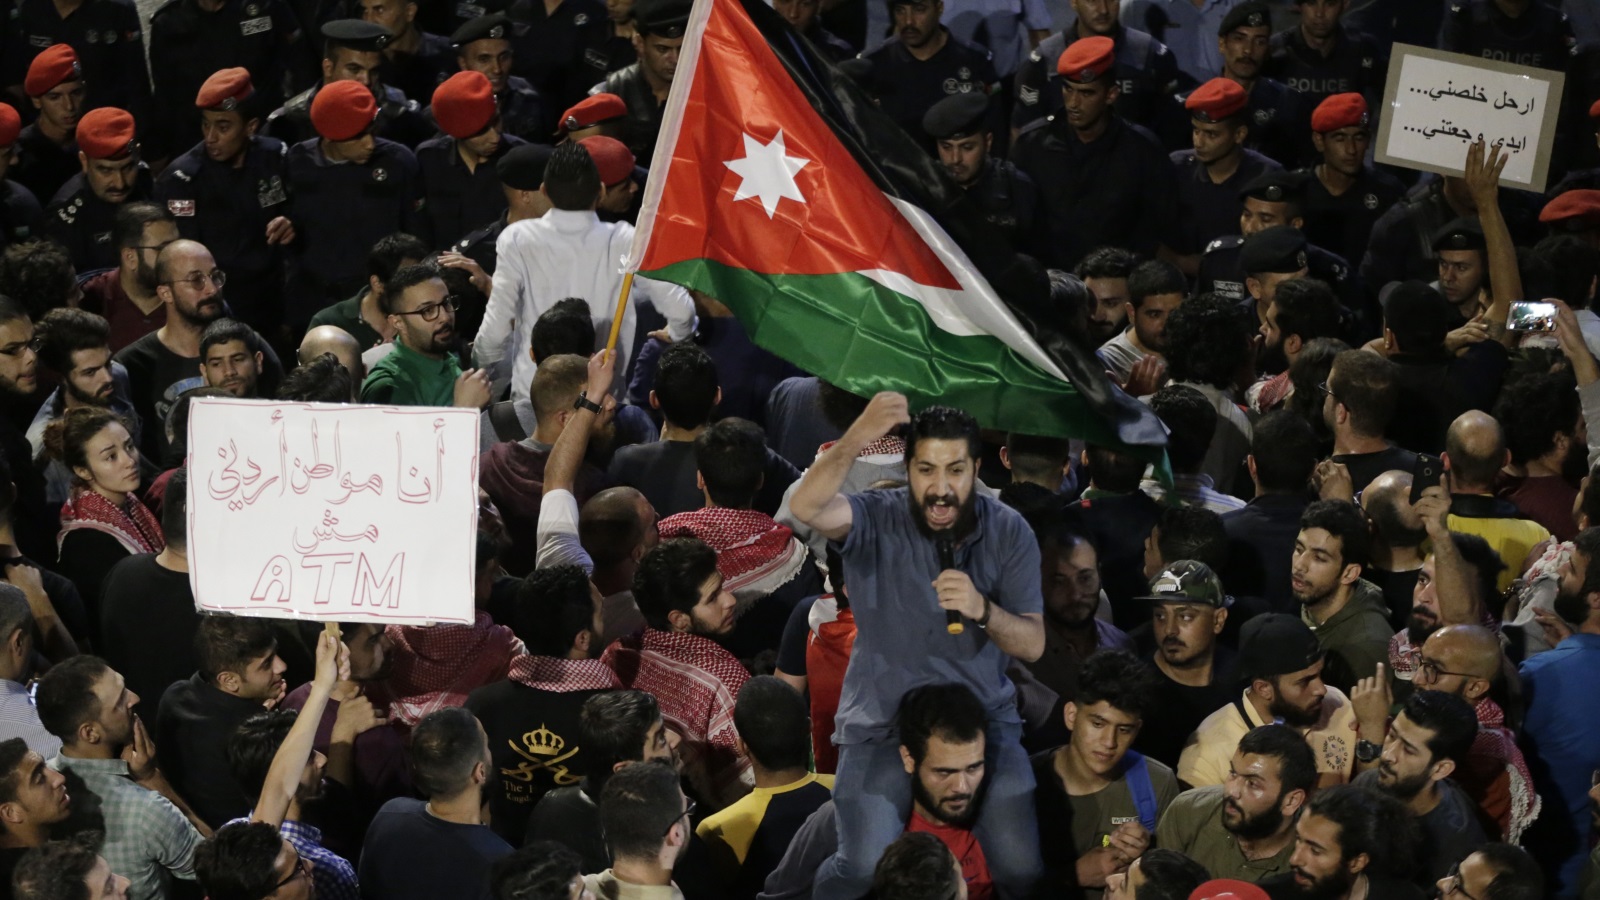 ‪رفع ضريبة الدخل أدى إلى احتجاجات واسعة في الشارع الأردني‬ ( الأوروبية)